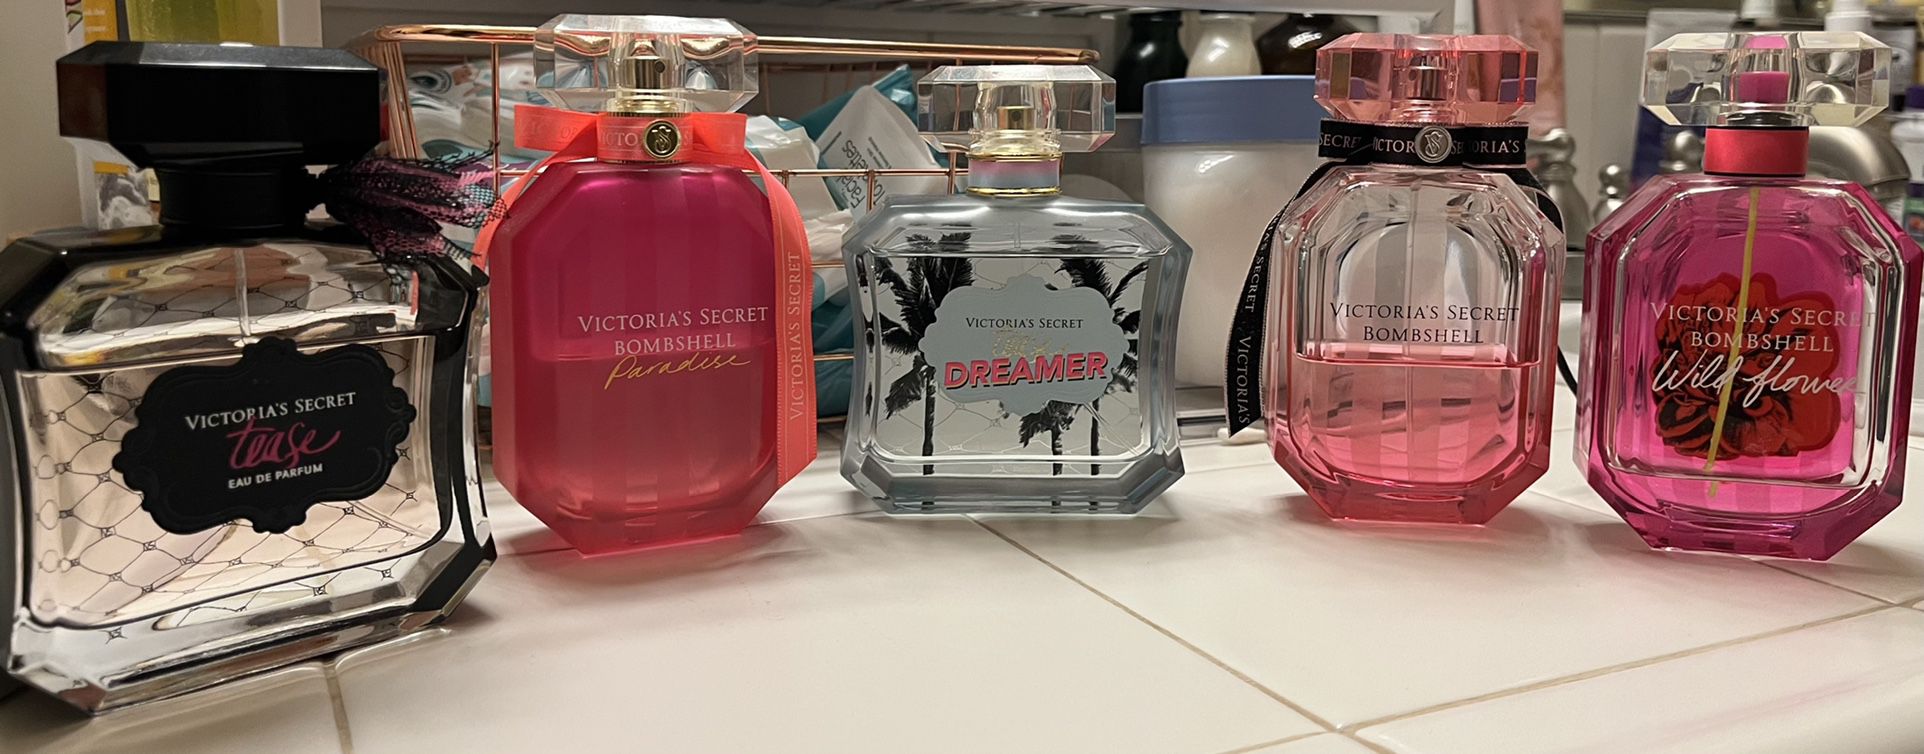 Victoria’s Secret Perfume bundle